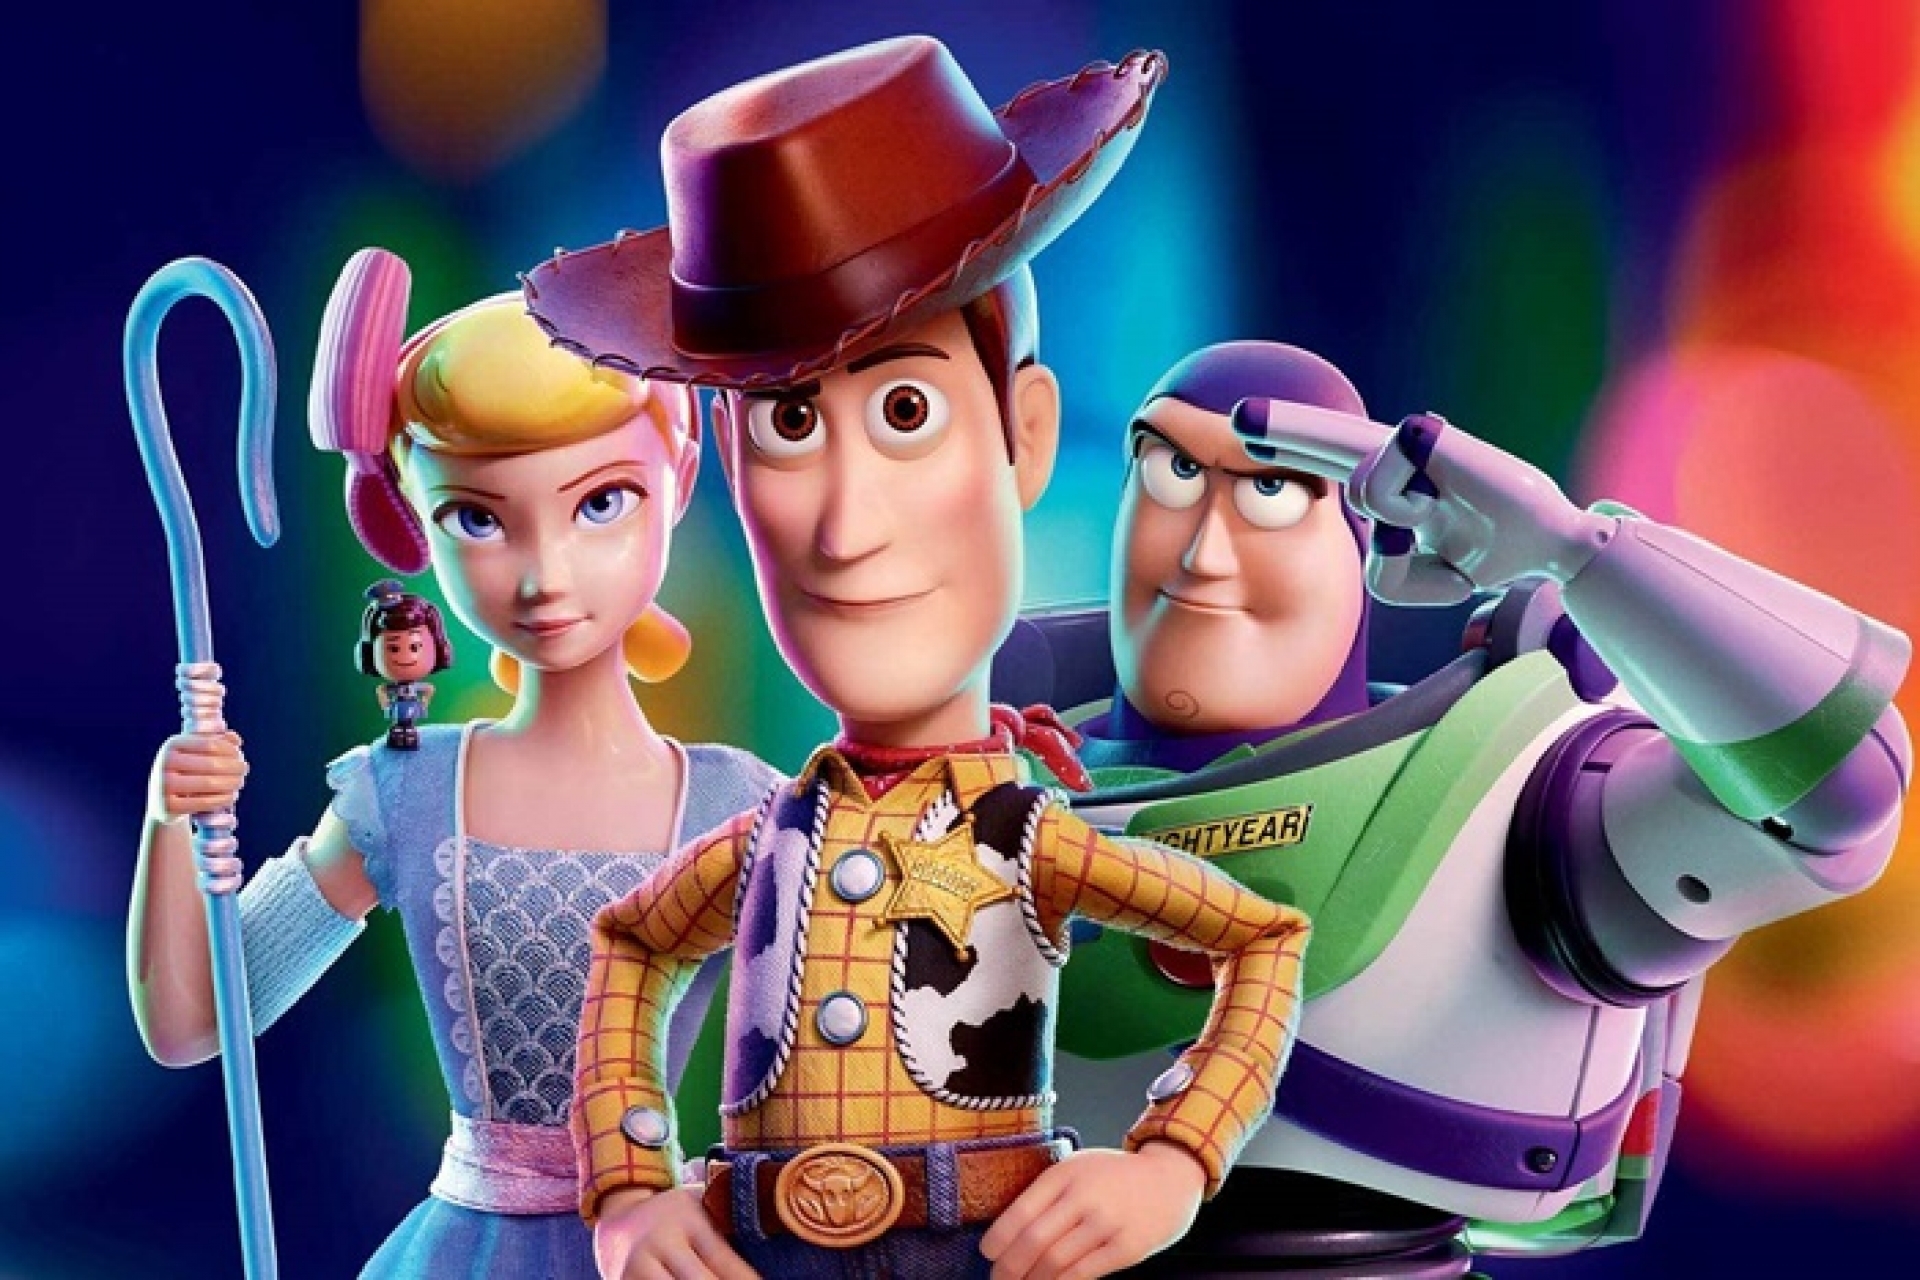 Toy Story 5 ganha previsão de estreia e detalhe crucial da trama